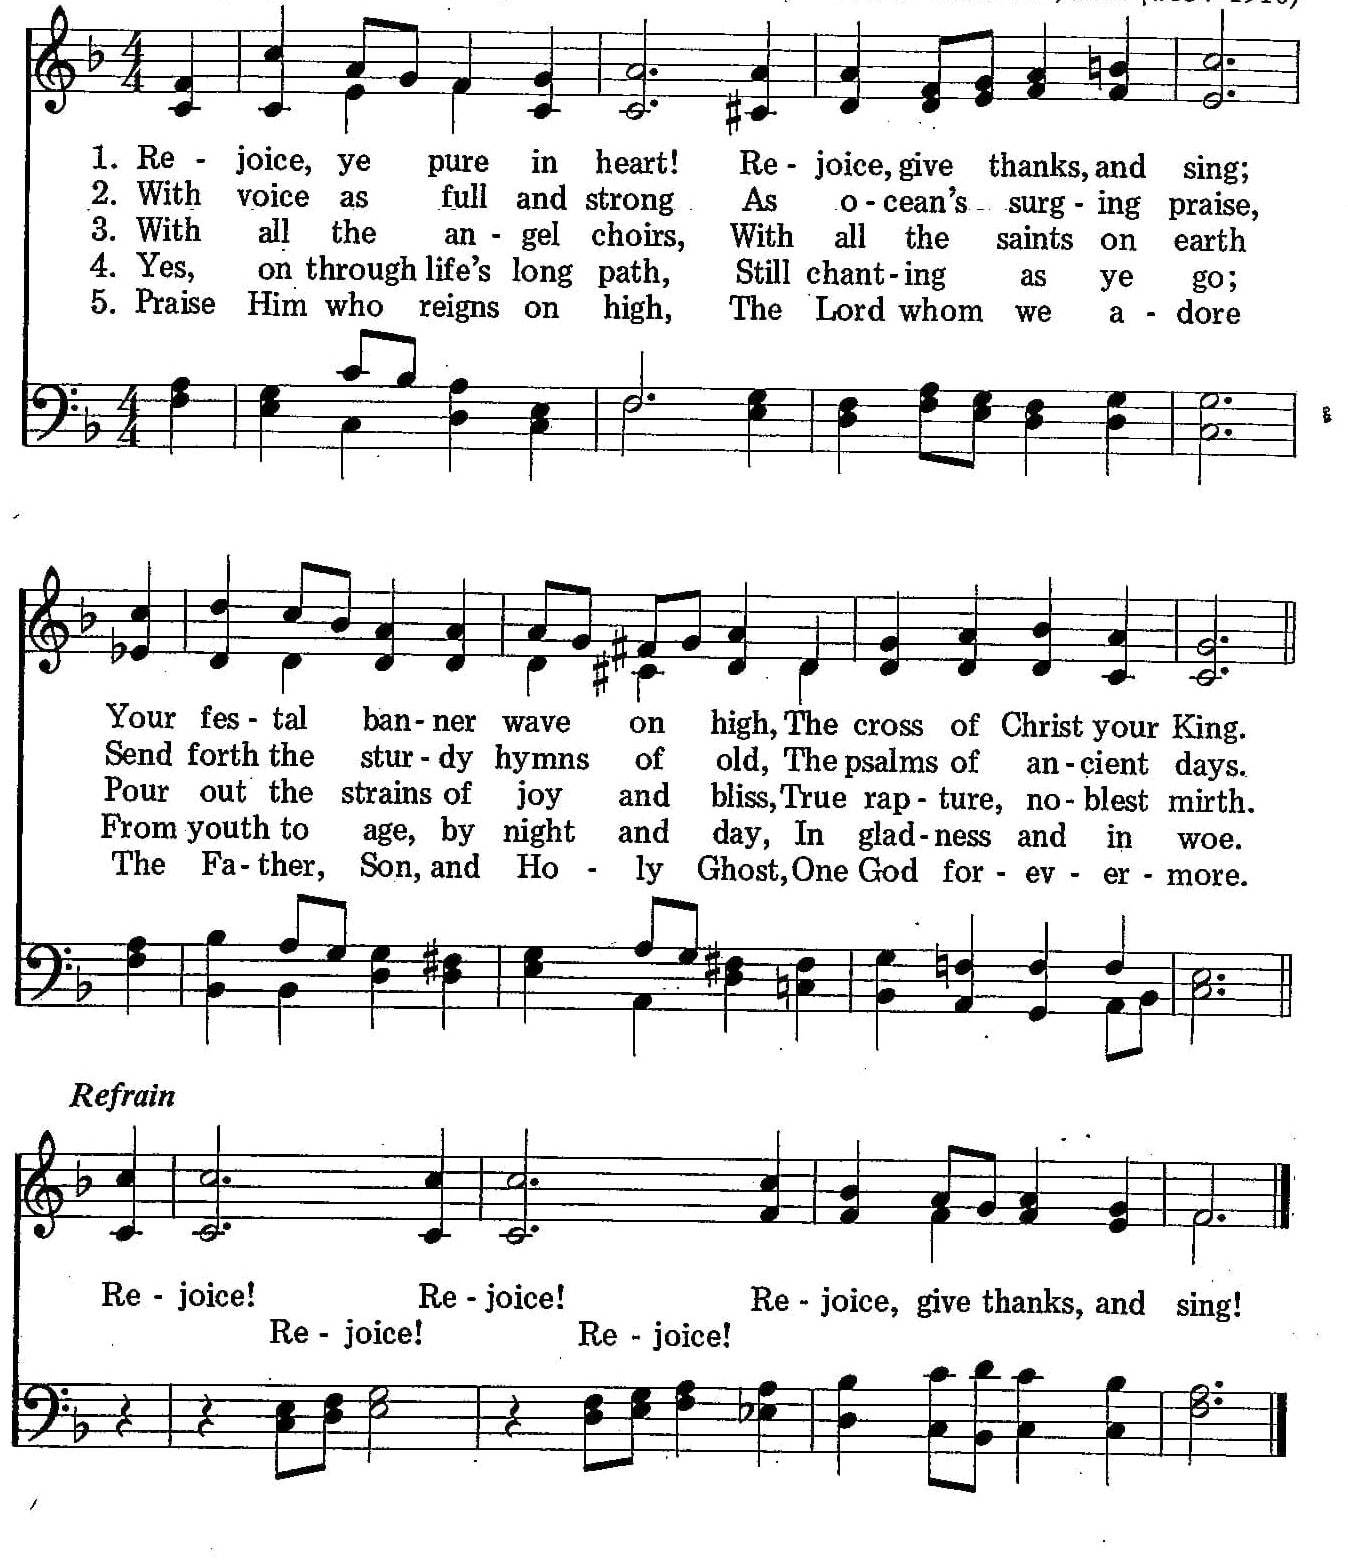 027 – Rejoice Ye Pure in Heart! sheet music